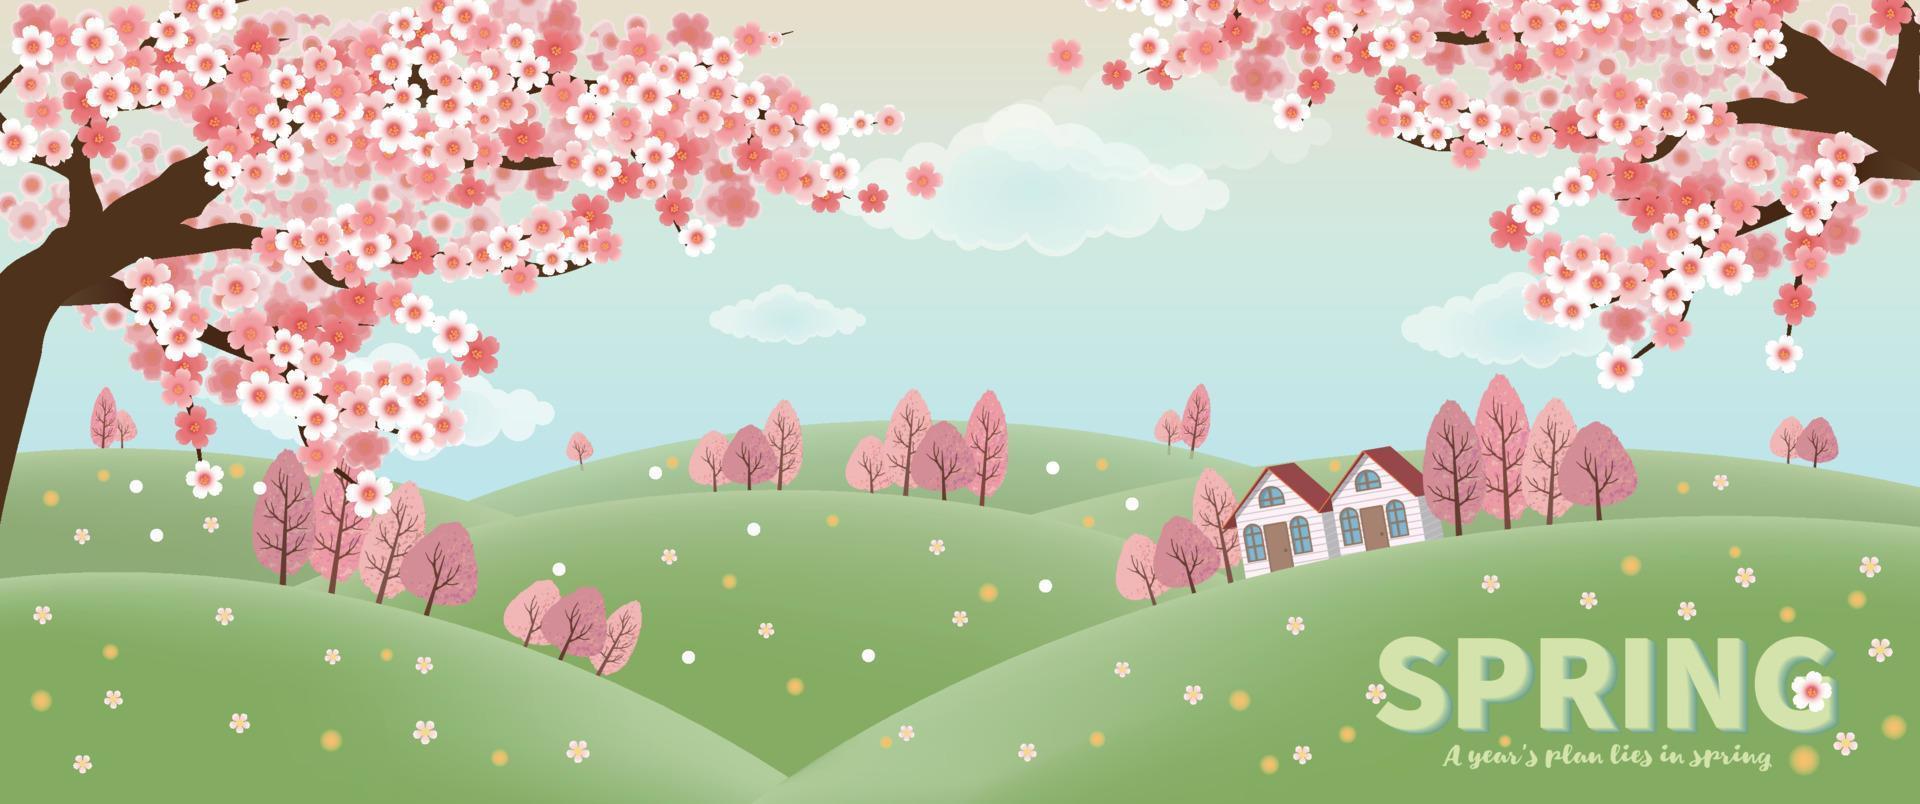 Frühlingsbanner mit Sakura-Baum und Haus am Hang vektor